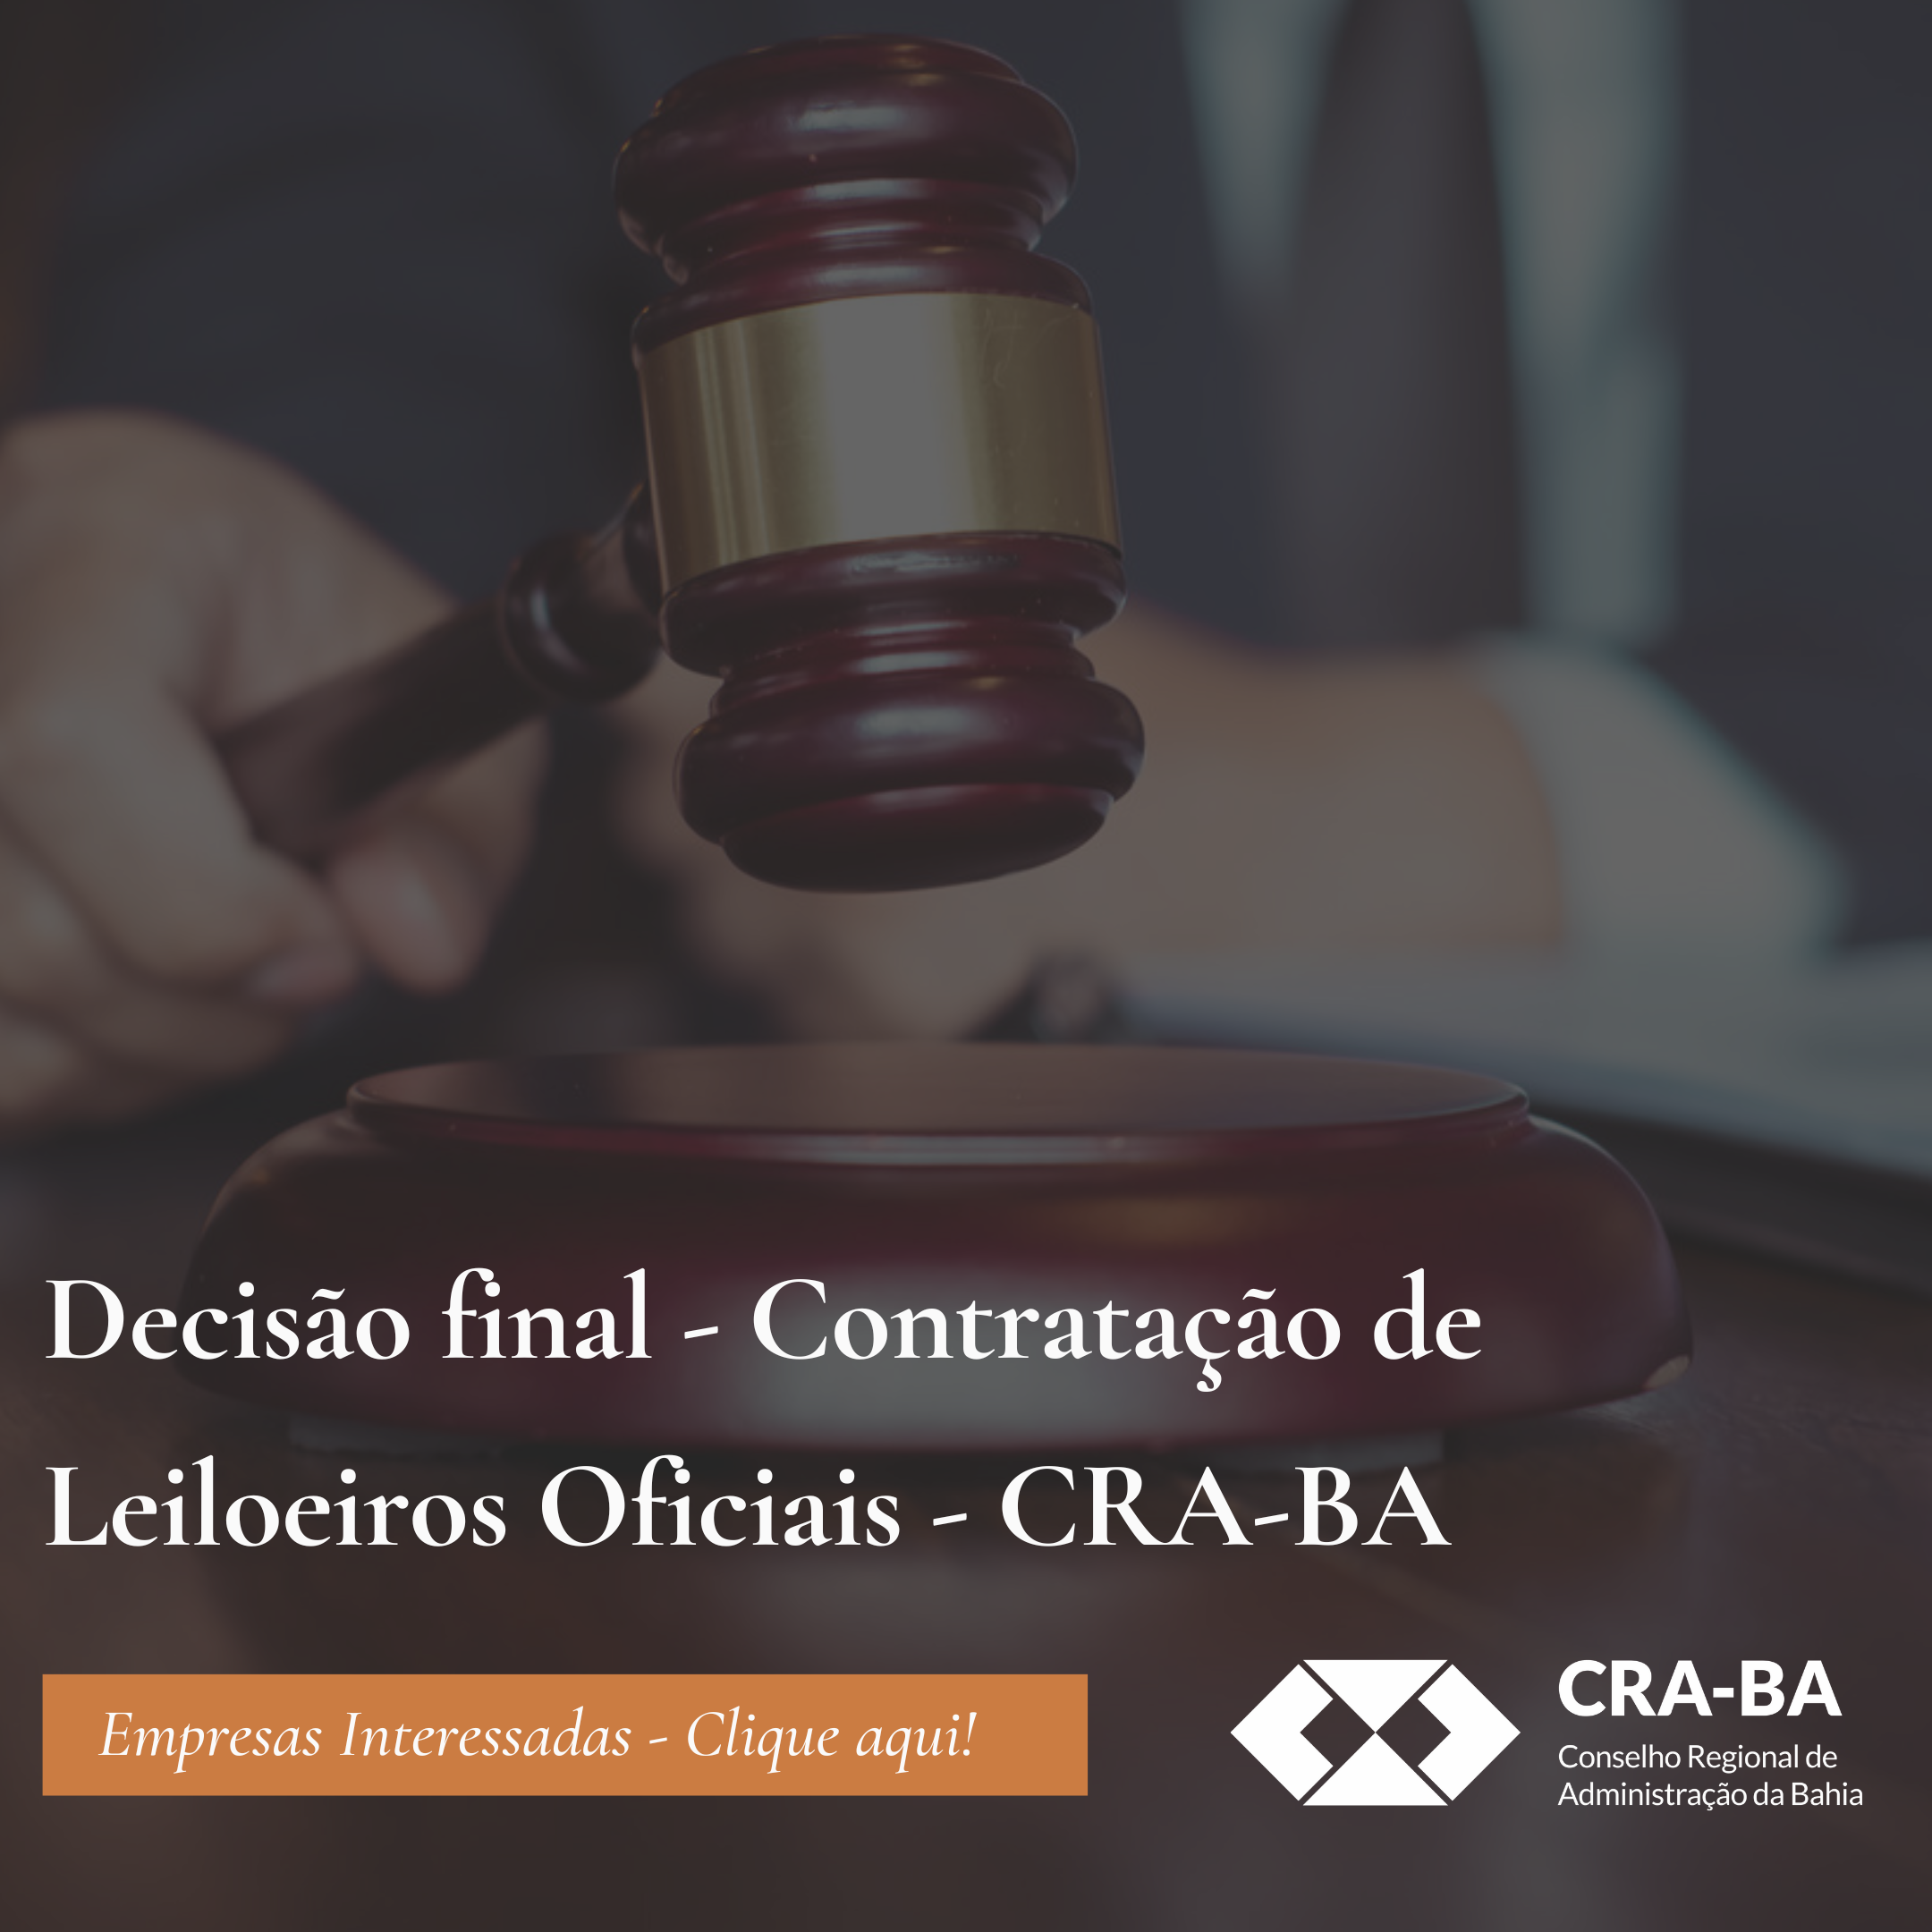 You are currently viewing Decisão final – Contratação de Leiloeiros Oficiais – CRA-BA